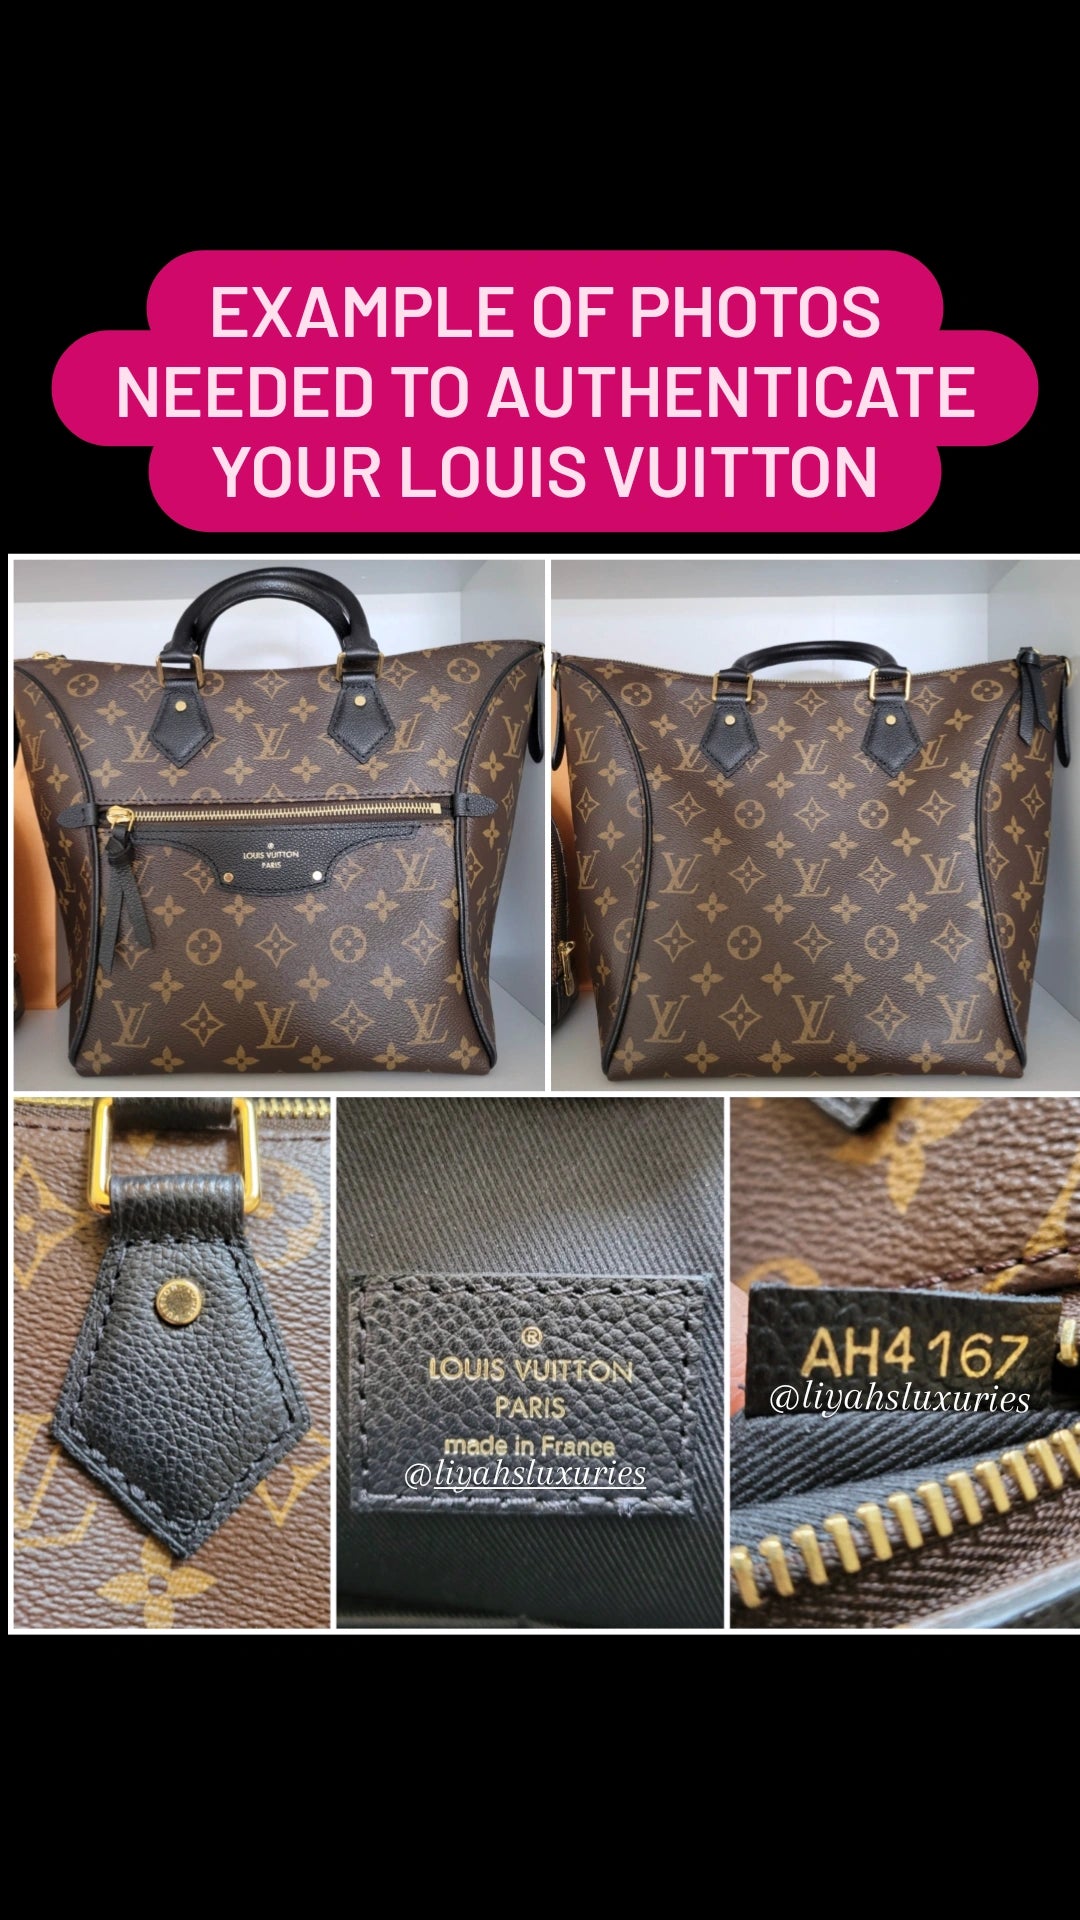 Louis Vuitton Verbal Authentication